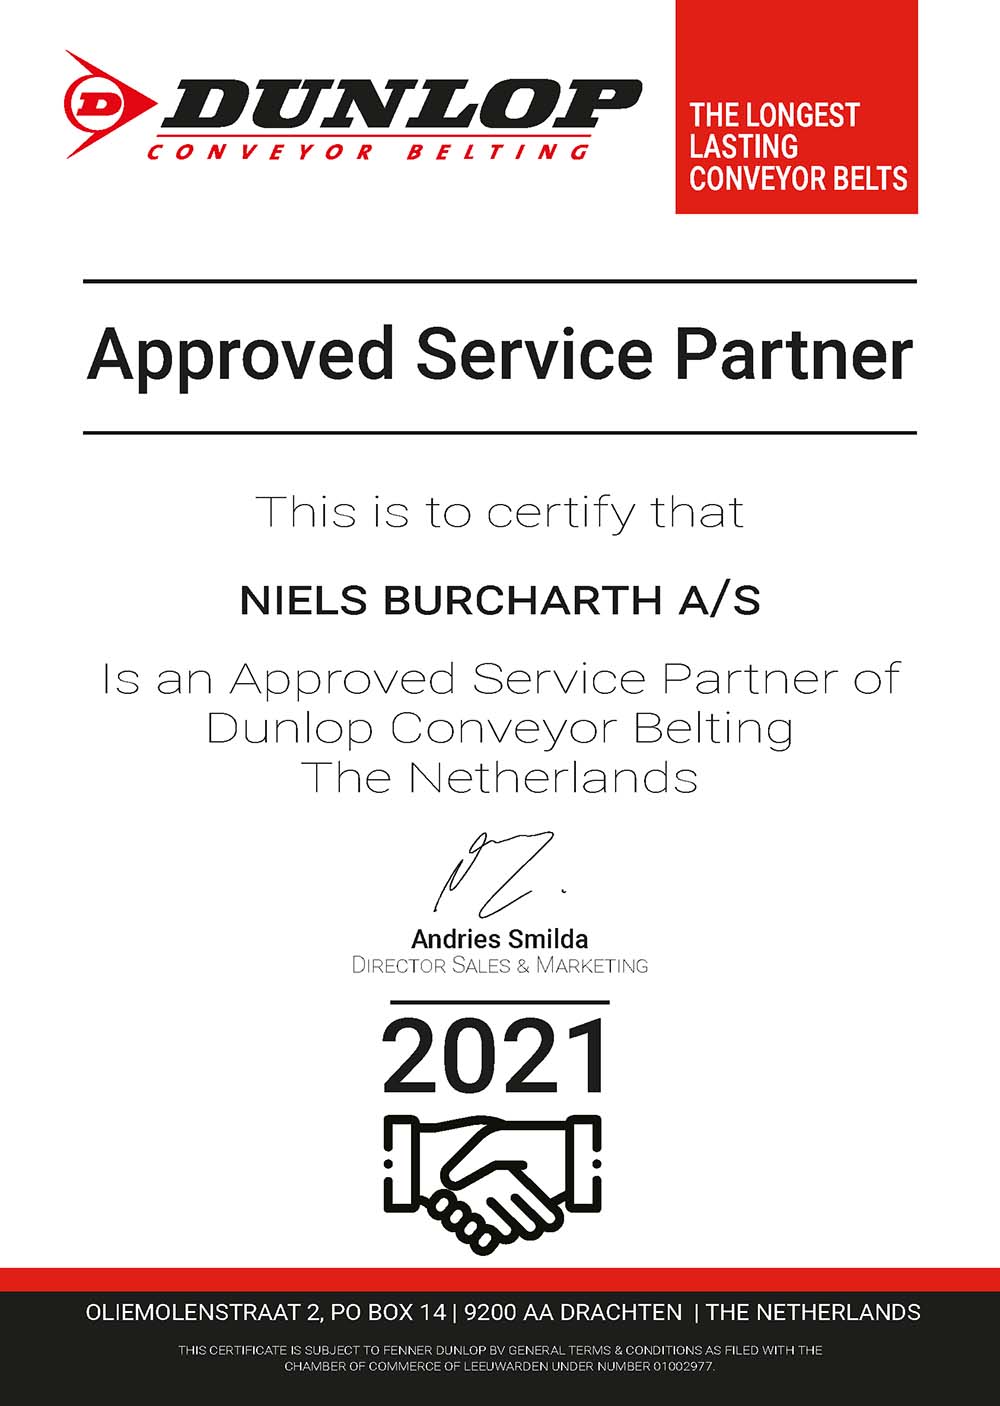 DUNLOP Approved Service Partner Certifikat